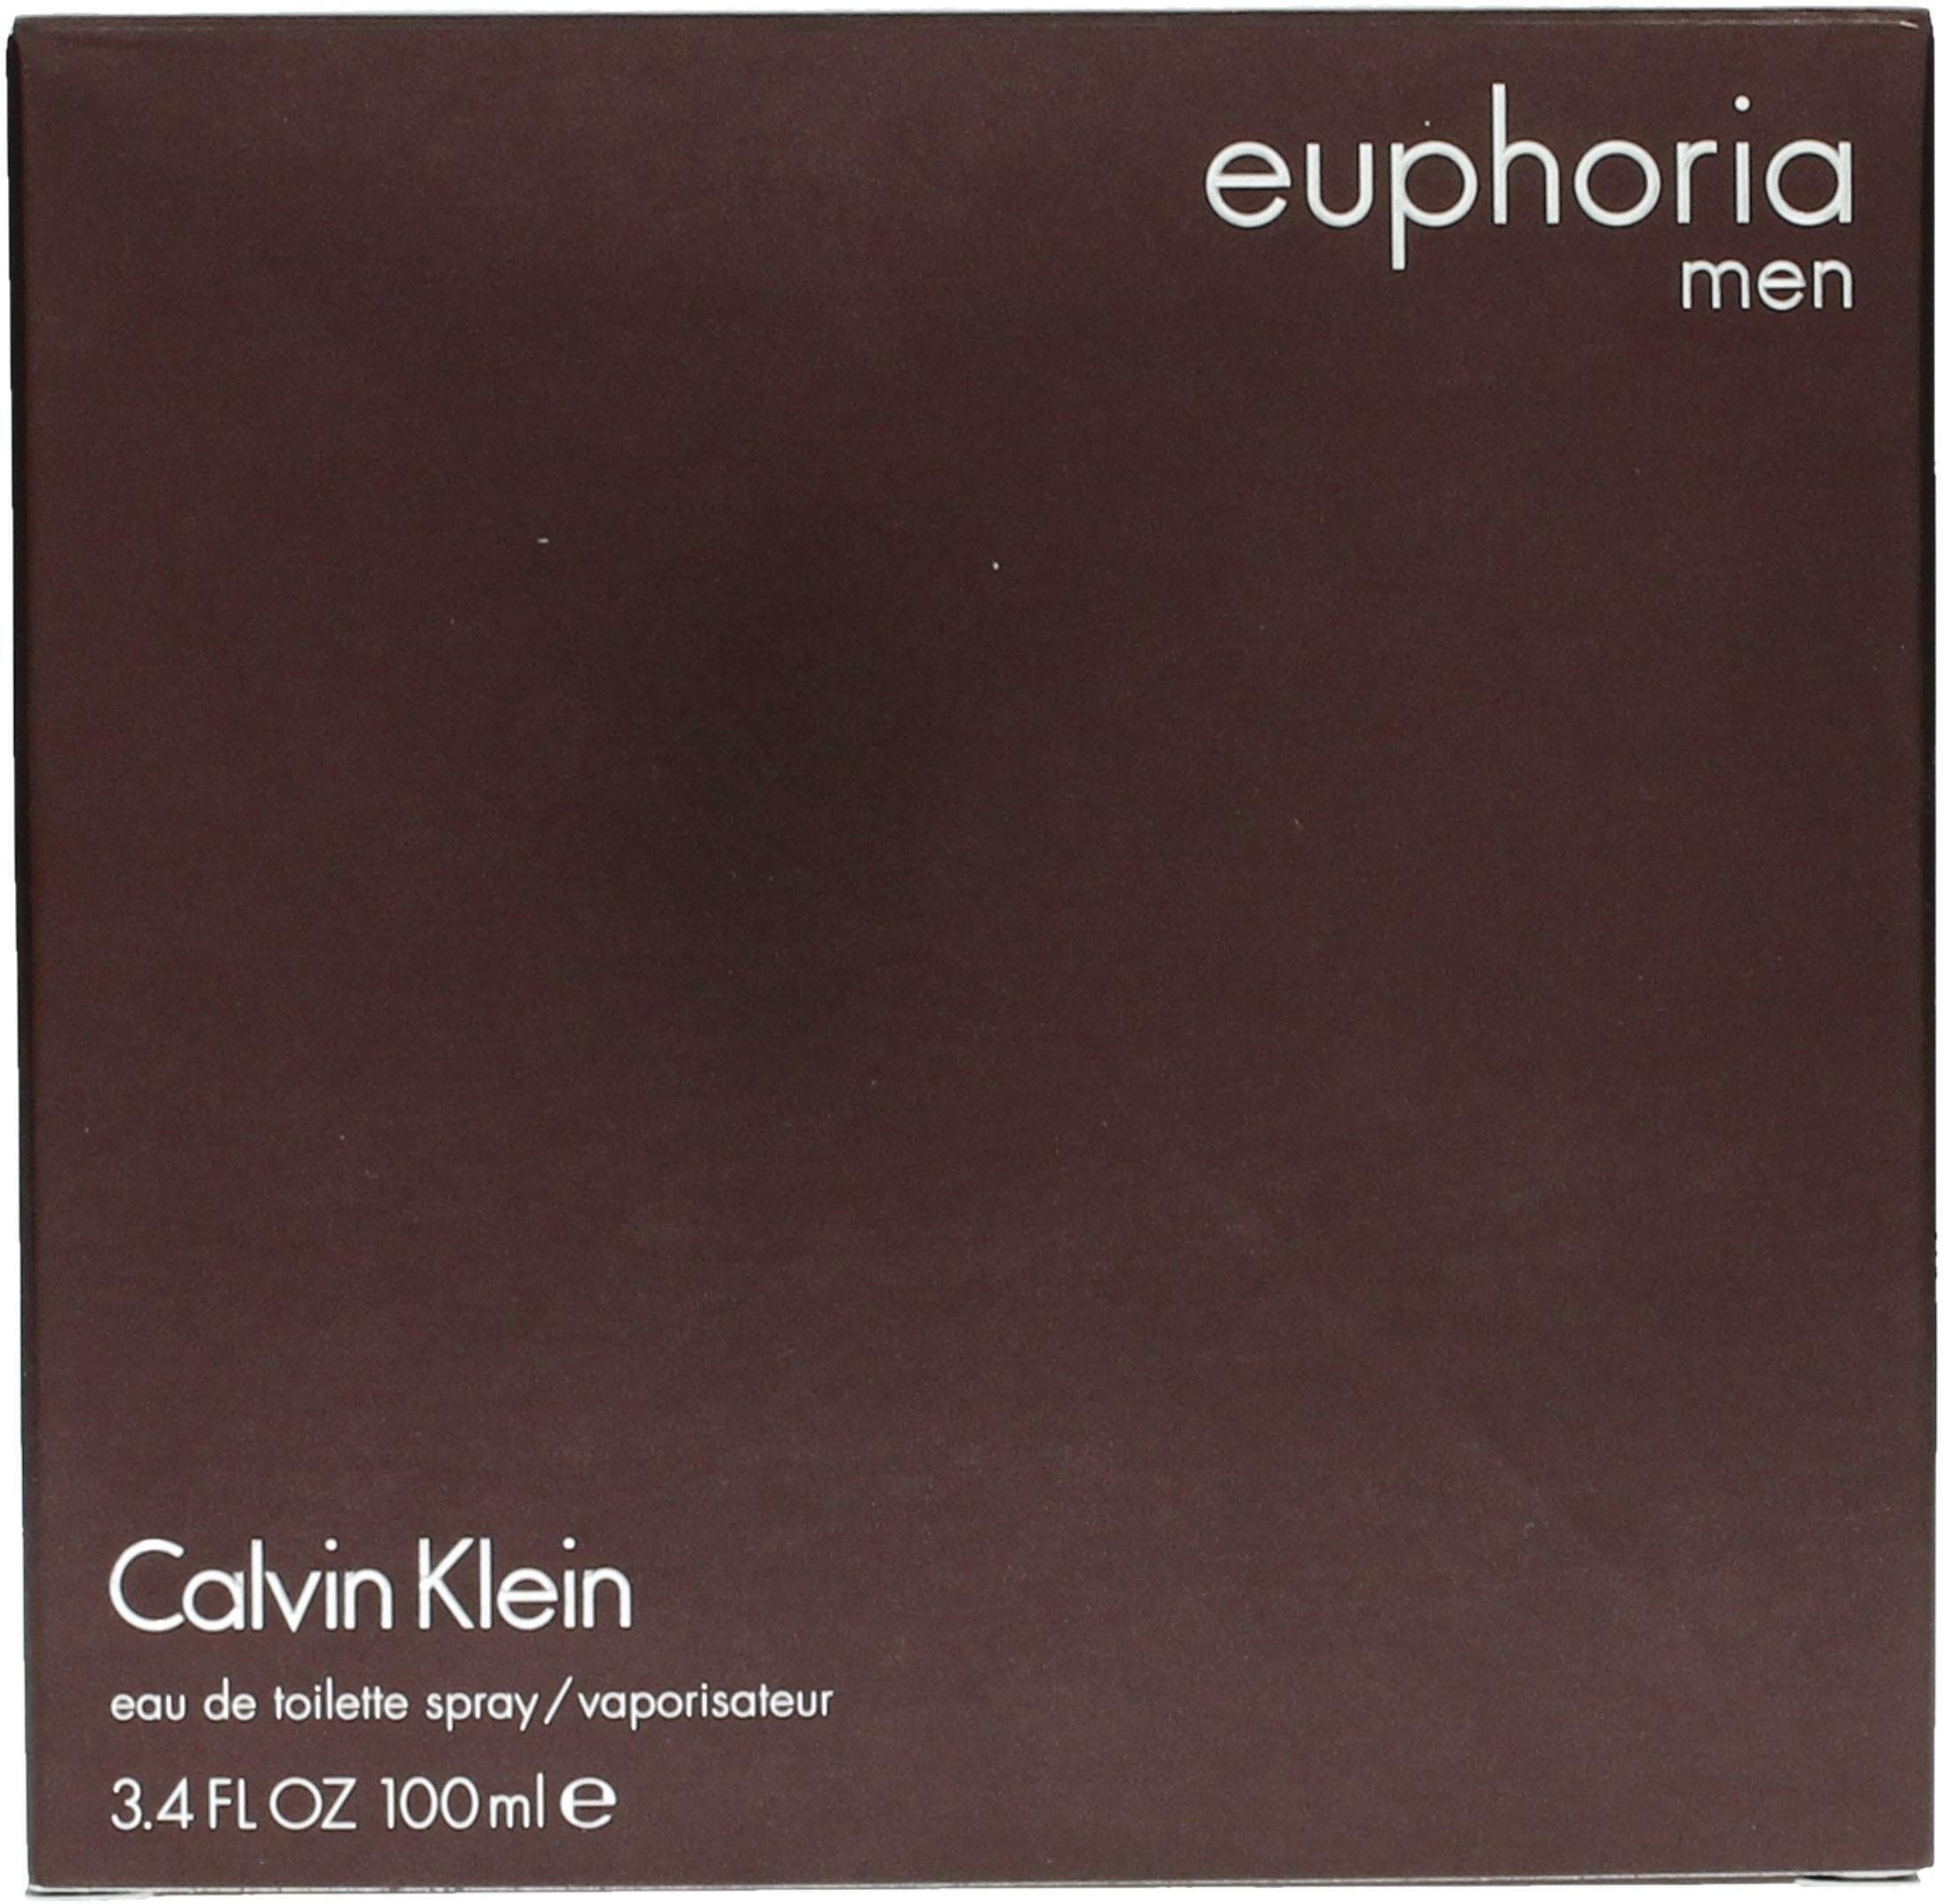 Klein Euphoria Toilette Eau Calvin de Men